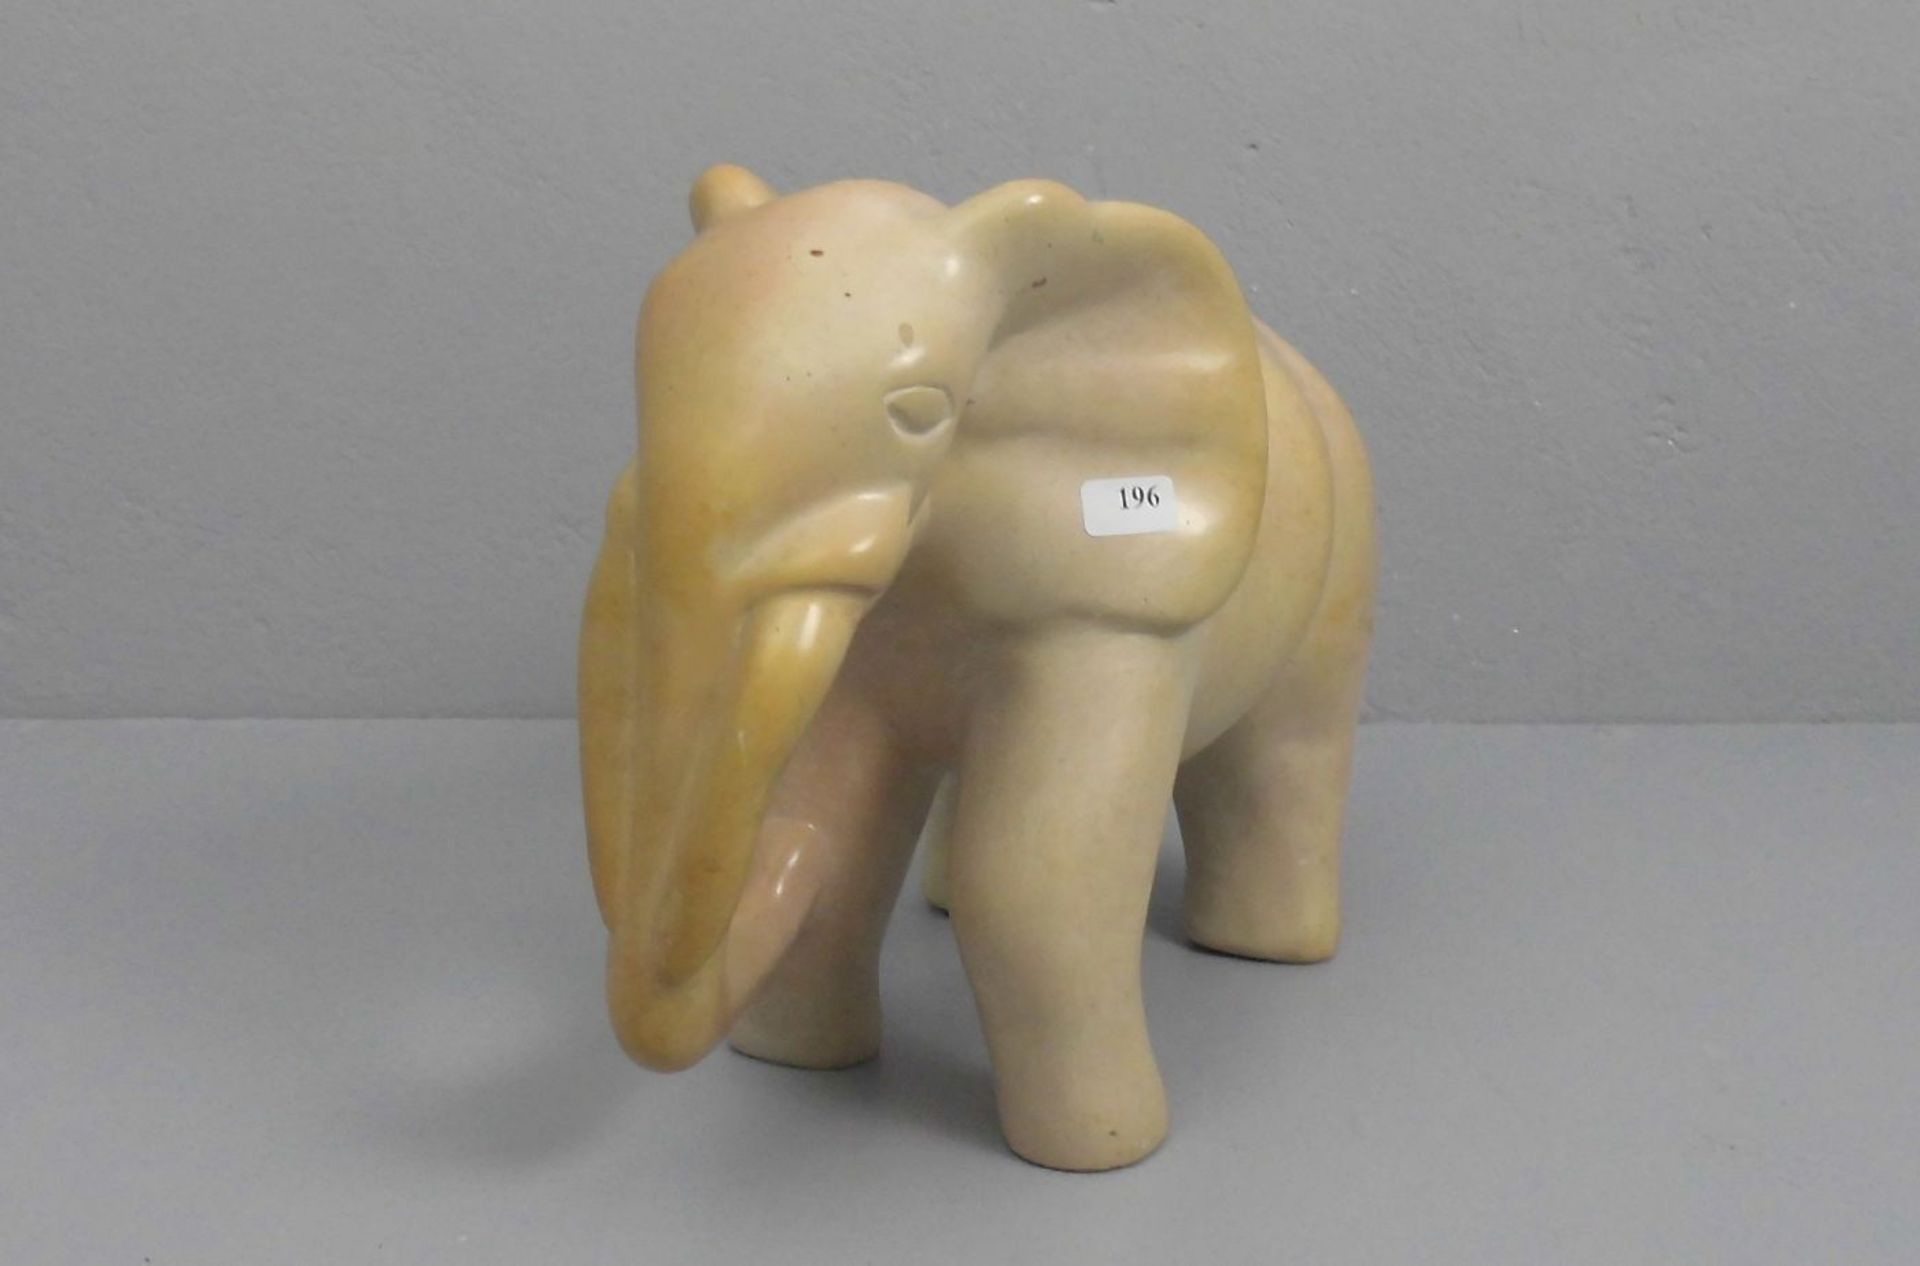 SKULPTUR: "Elefant", Speckstein, in leichter Stilisierung gearbeiteter afrikanischer Elefant. H.